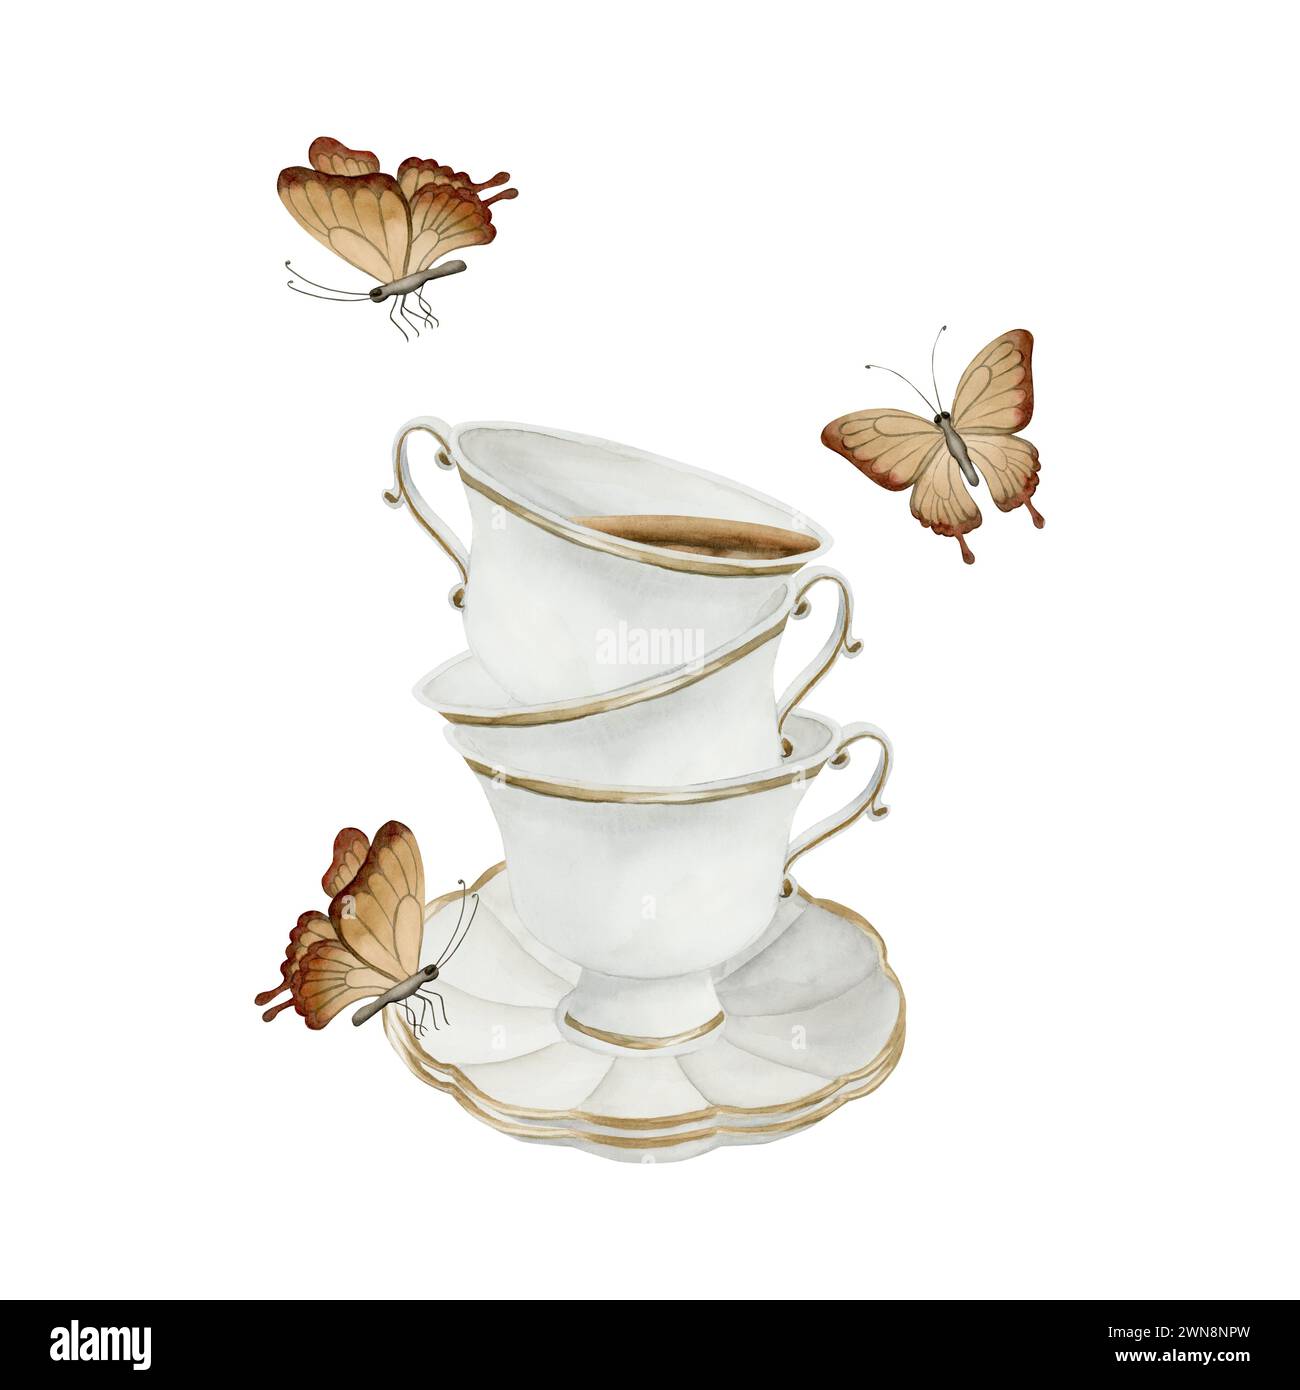 Composizione di tazze da tè in porcellana bianca con tè, piattini con bordo dorato e farfalle marroni. Stile vittoriano. Illustrazione ad acquerello dipinta a mano Foto Stock